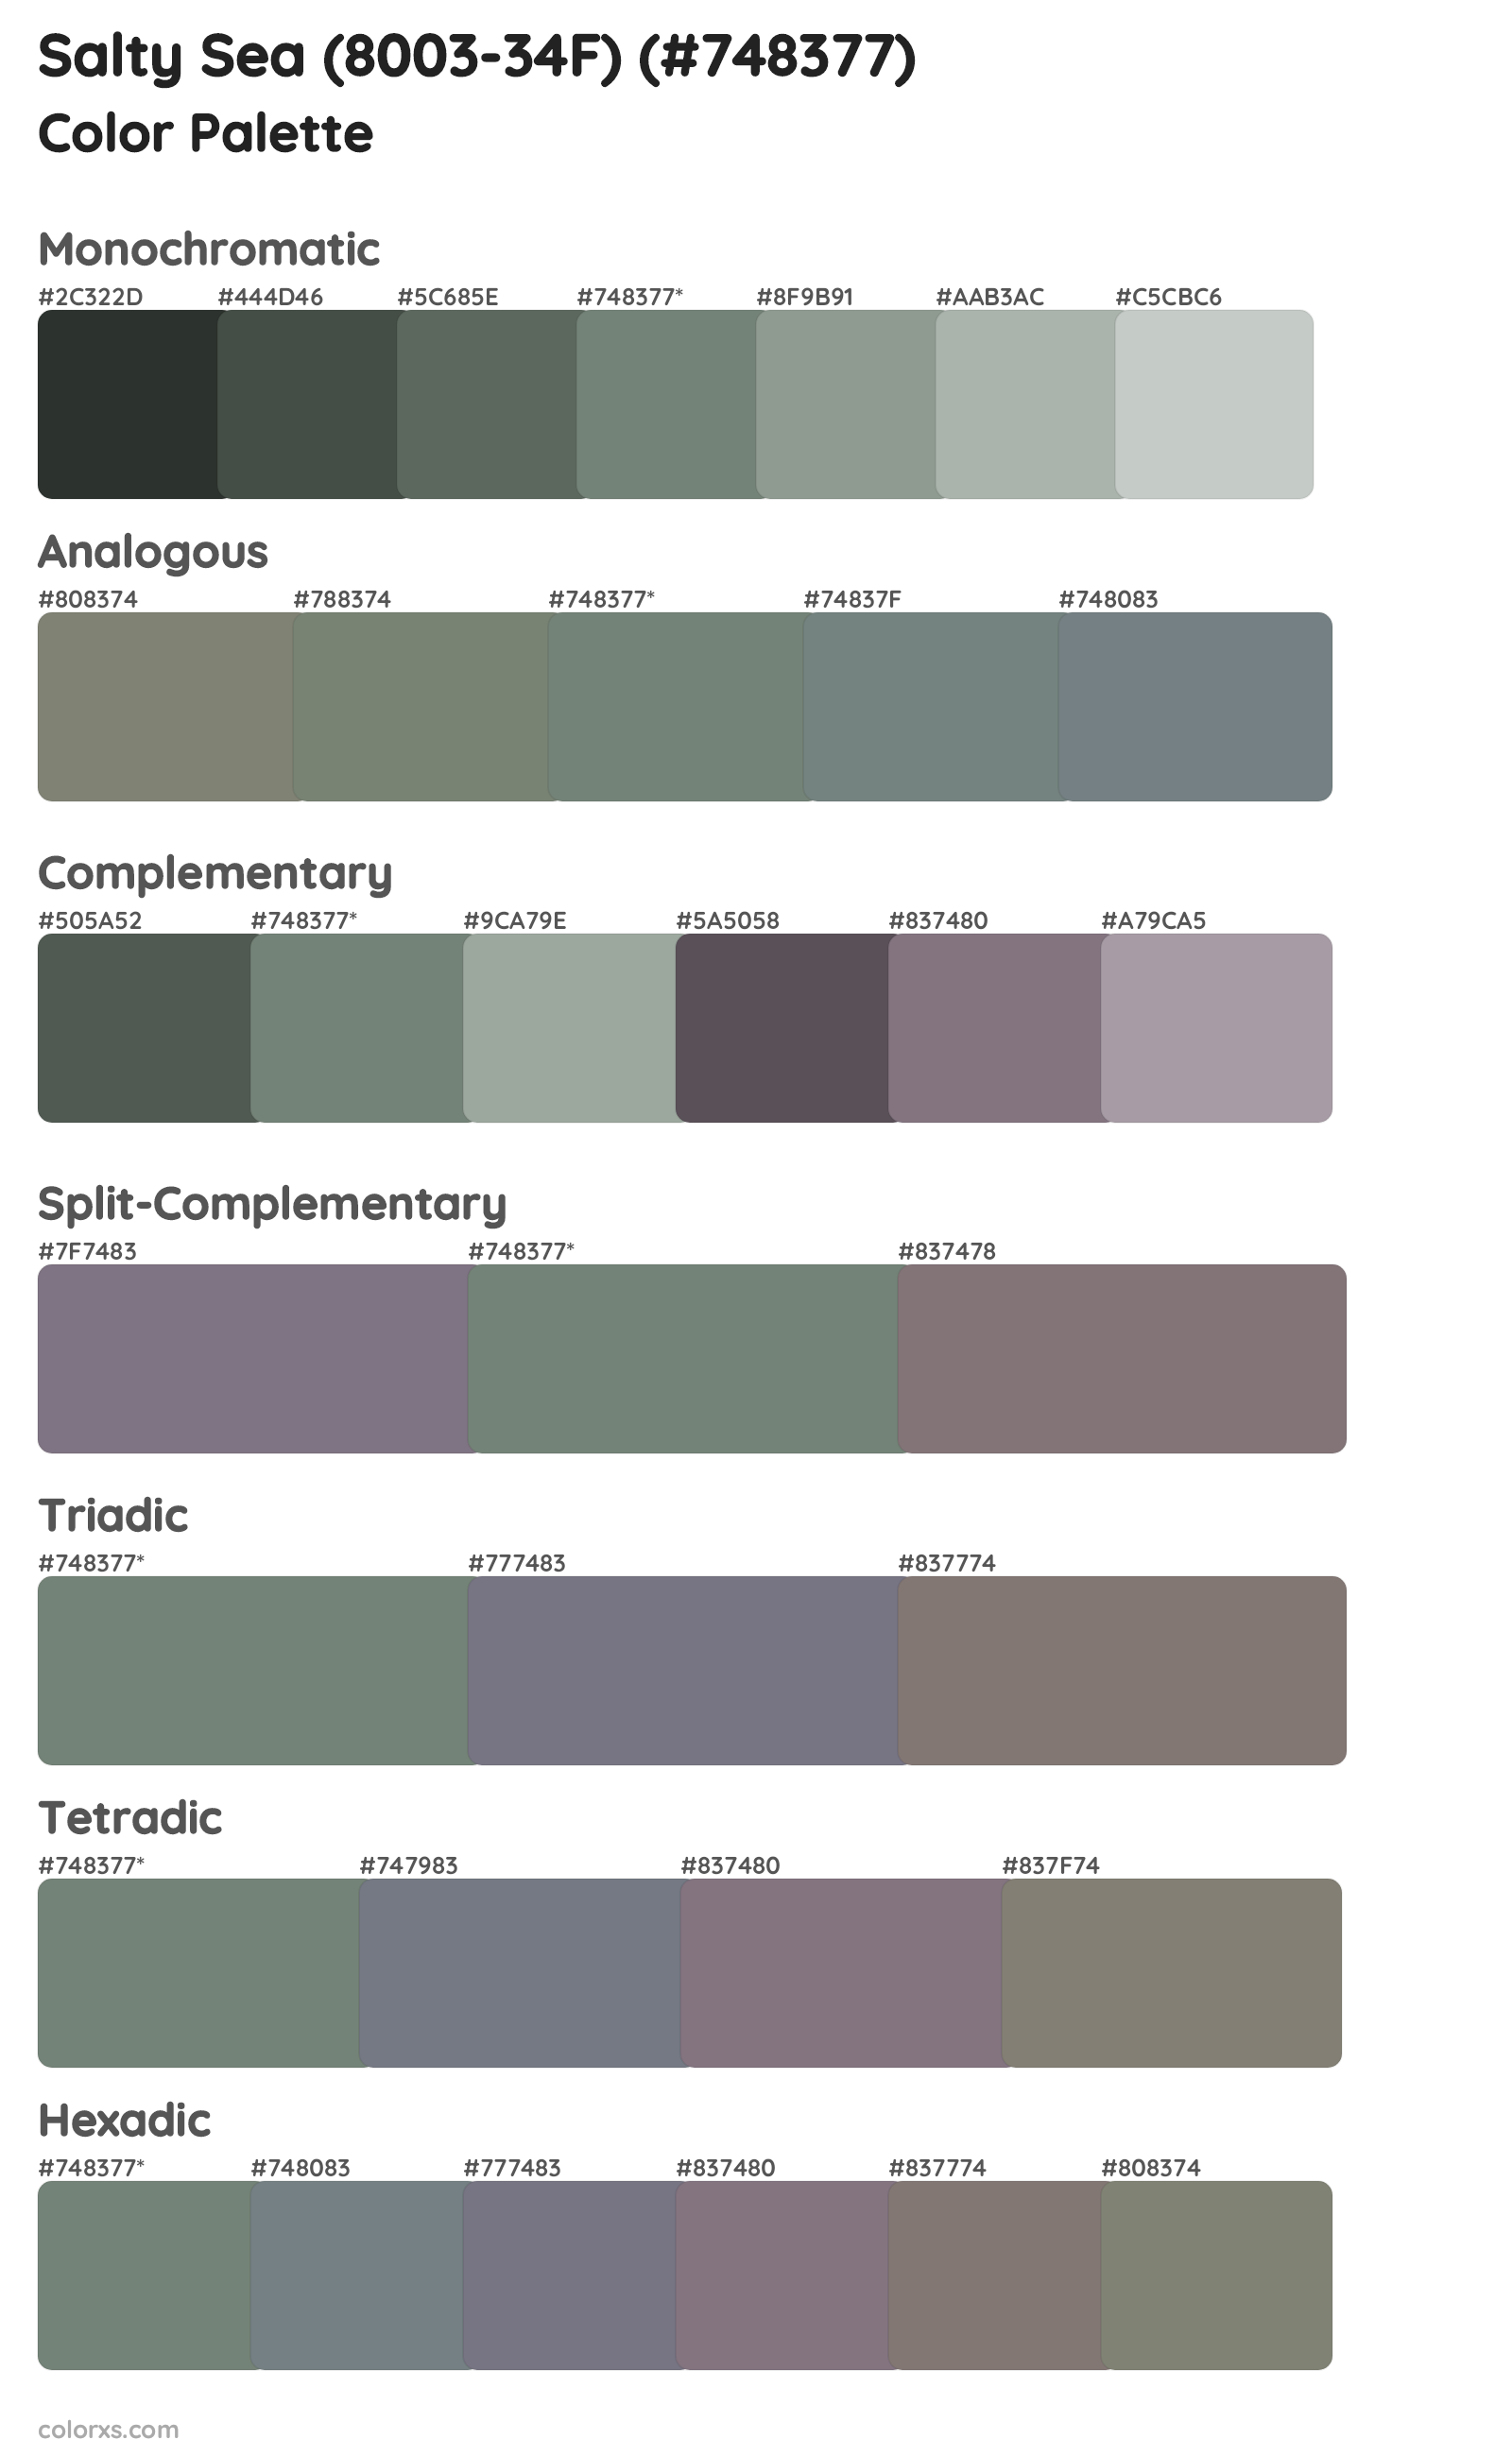 Salty Sea (8003-34F) Color Scheme Palettes